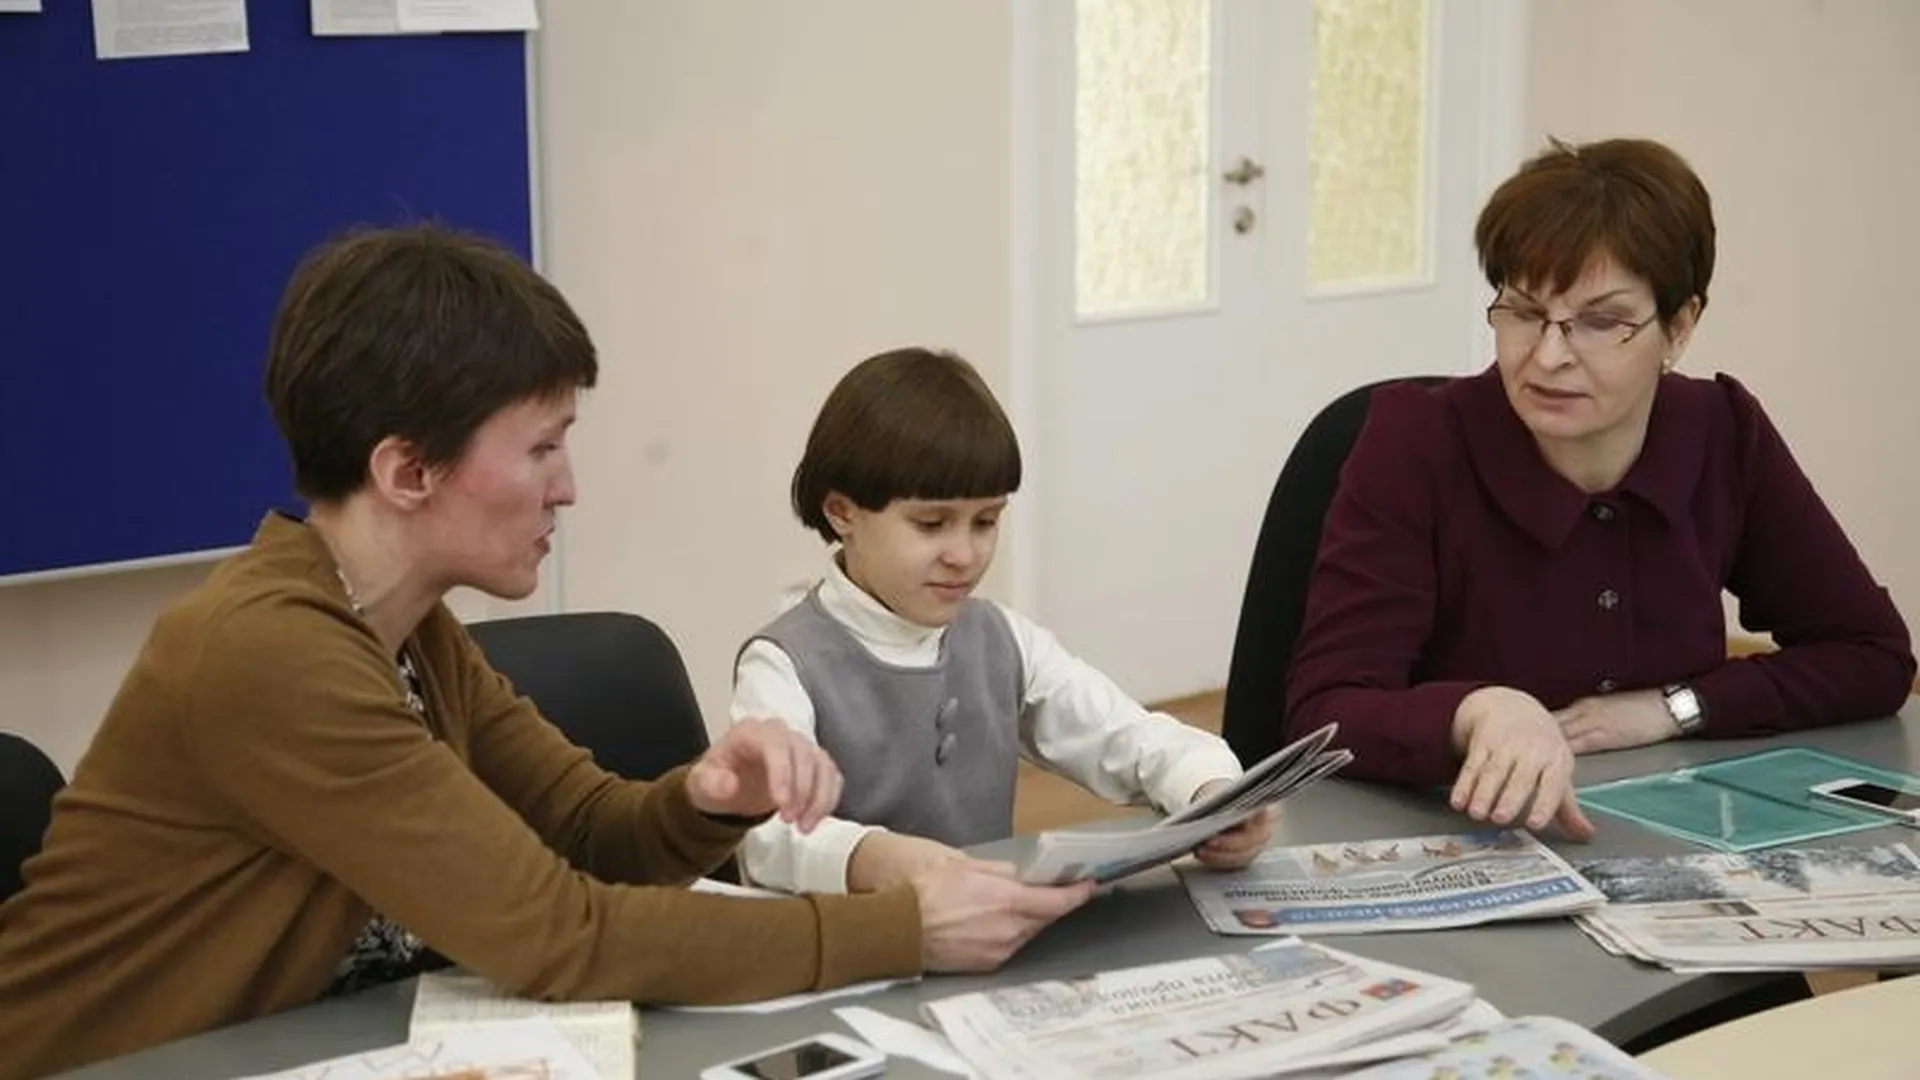 Проект по совместному обучению обычных учеников и аутистов стартует в Подмосковье